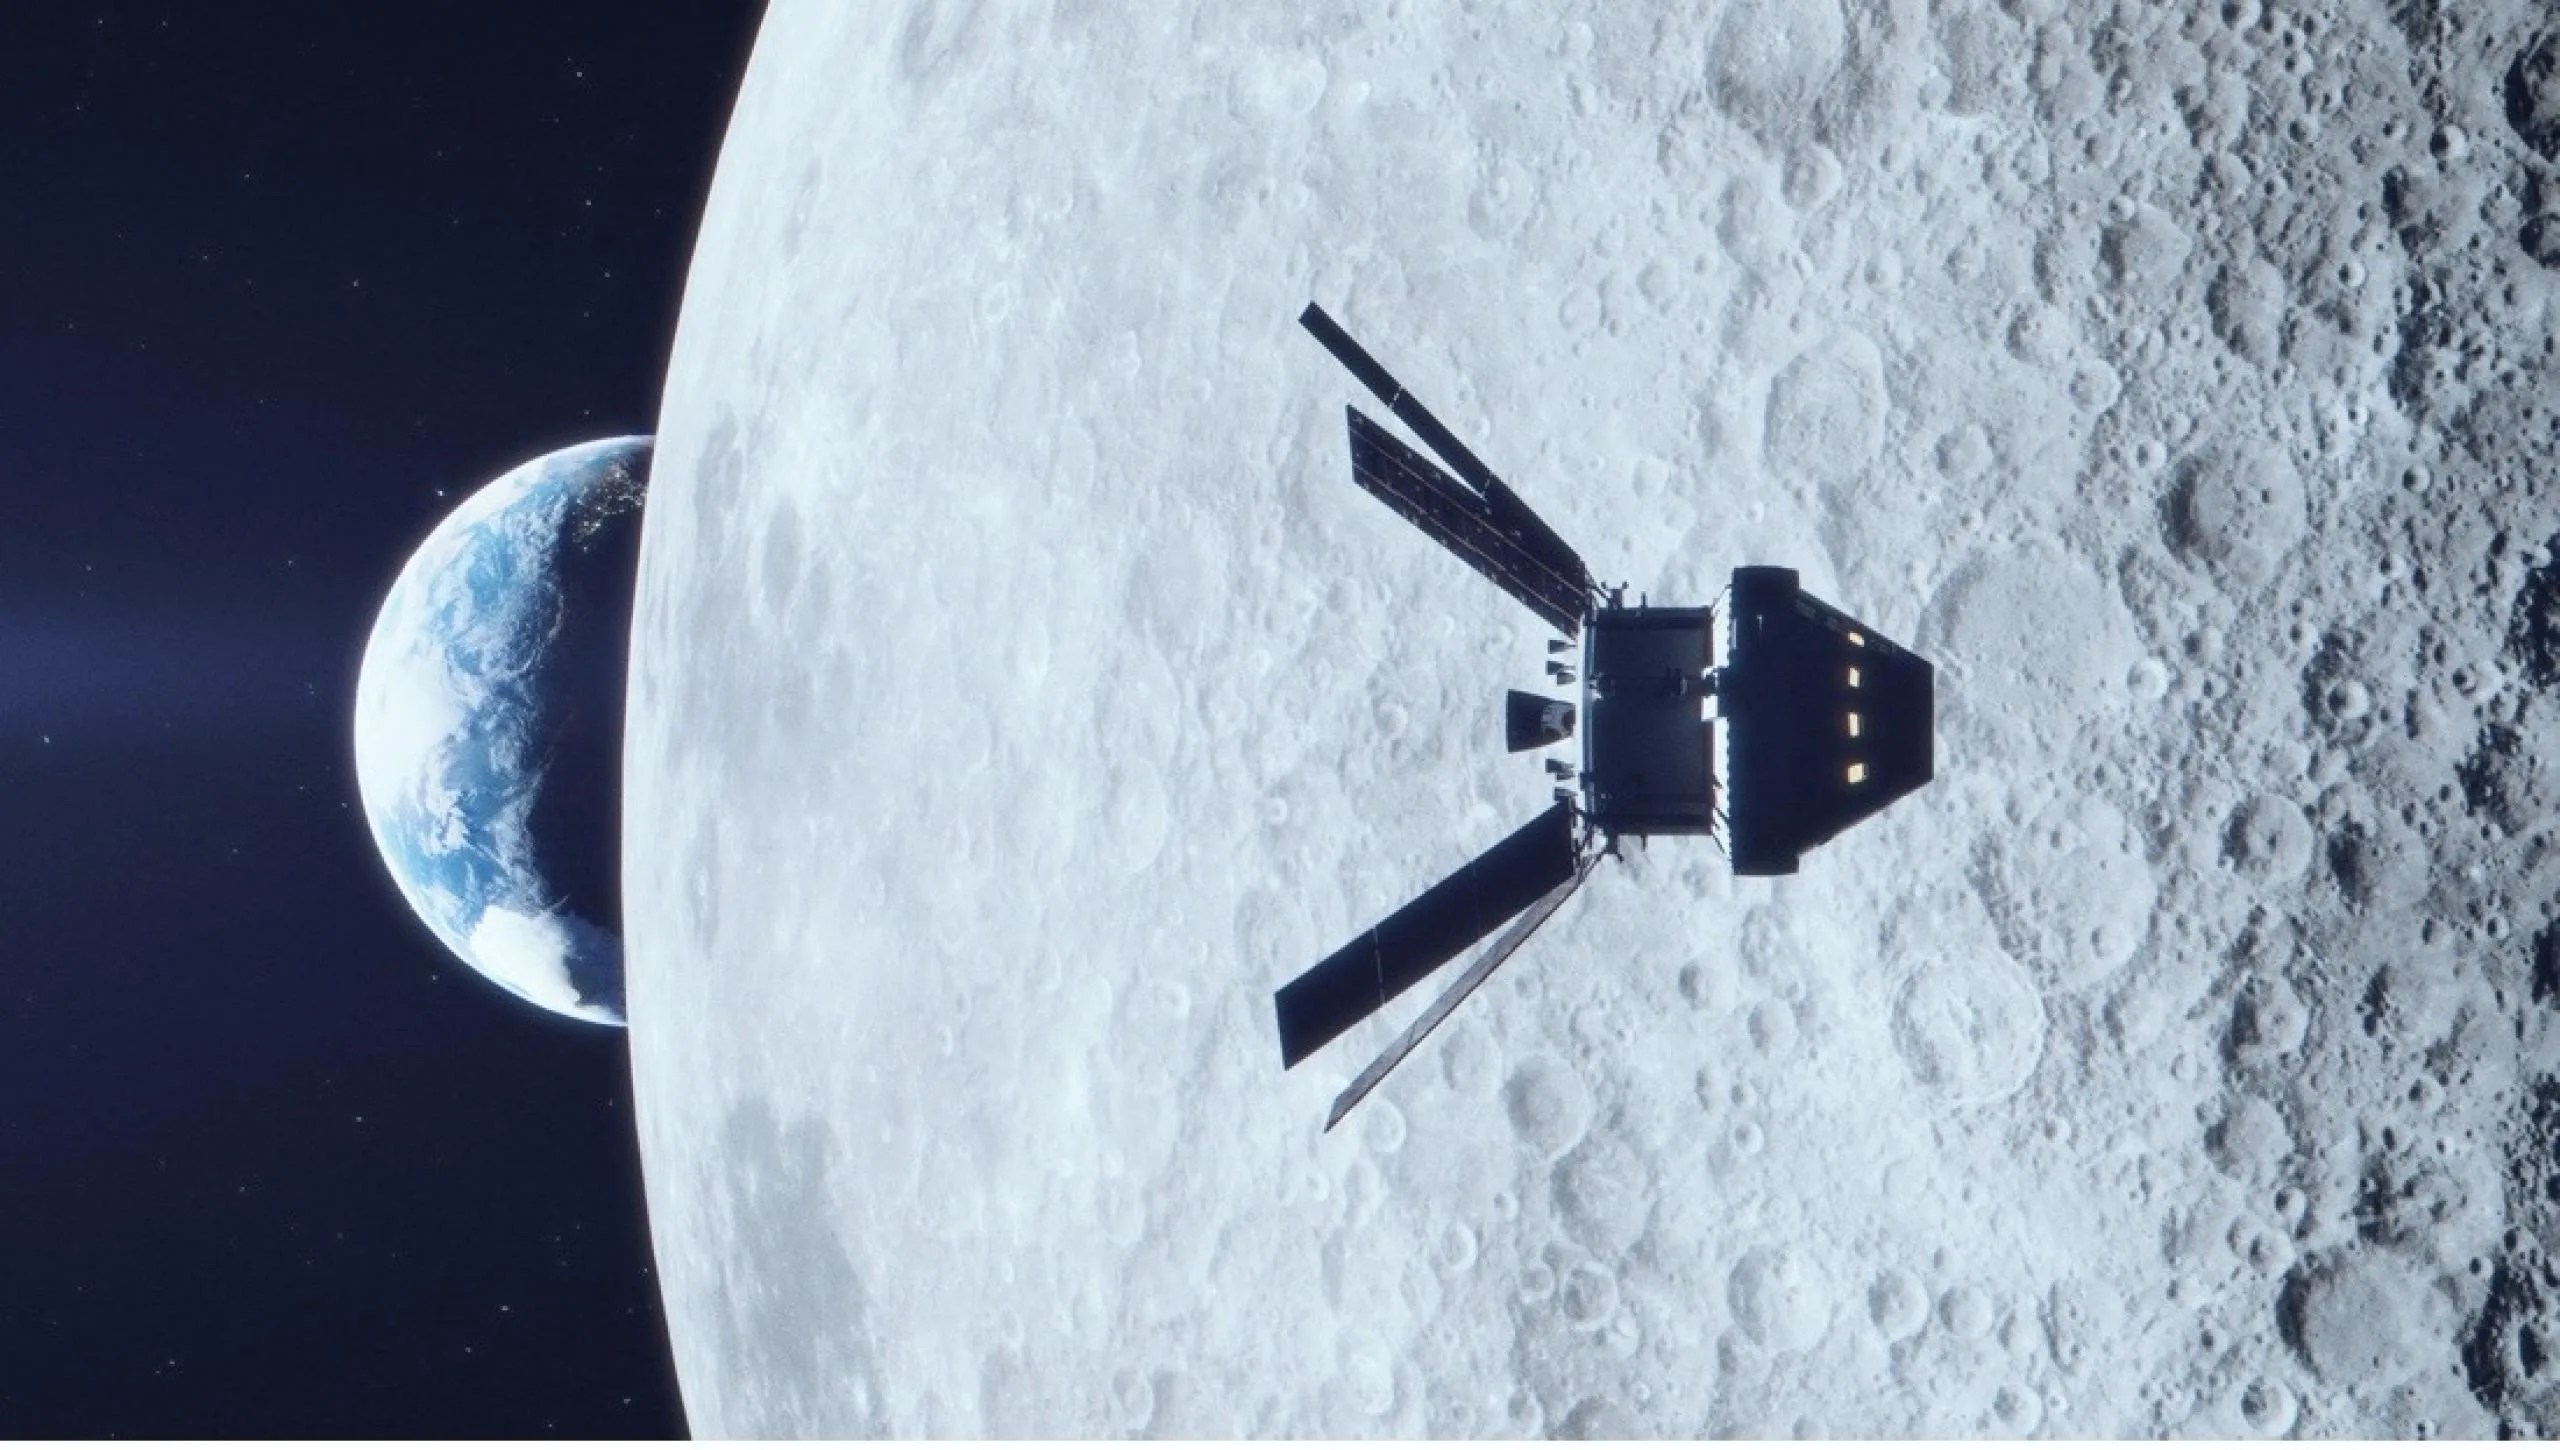 En primer plano, está la cápsula orbitando alrededor de la superficie de la Luna llena de cráteres, con la mitad de la Tierra apareciendo detrás.